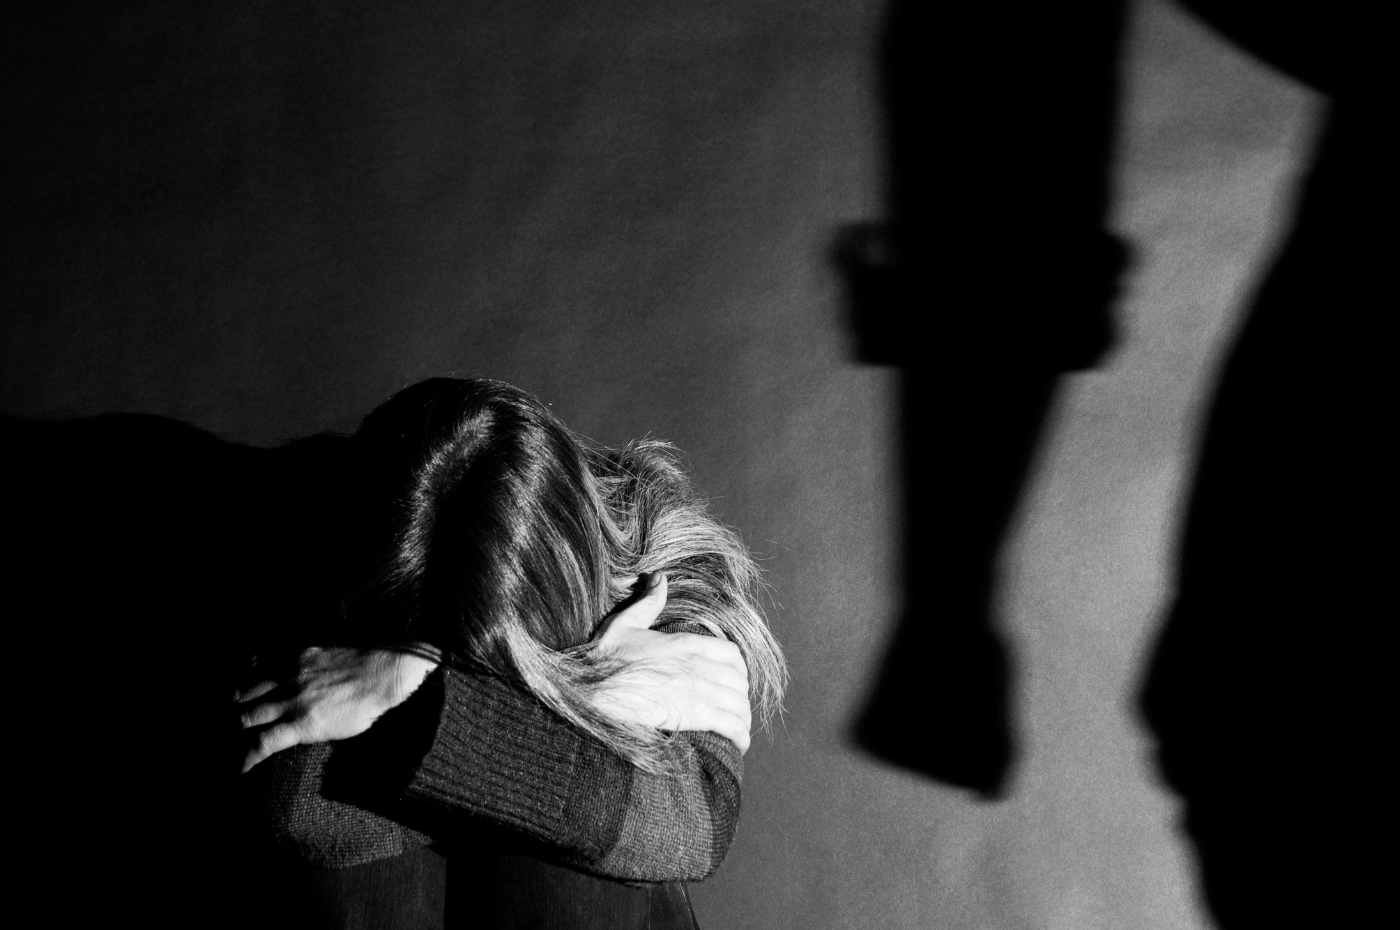 violência contra mulher, uma mulher sentada no chão com a cabeça abaixada e a sombra de um homem com o punho fechado ameaçando